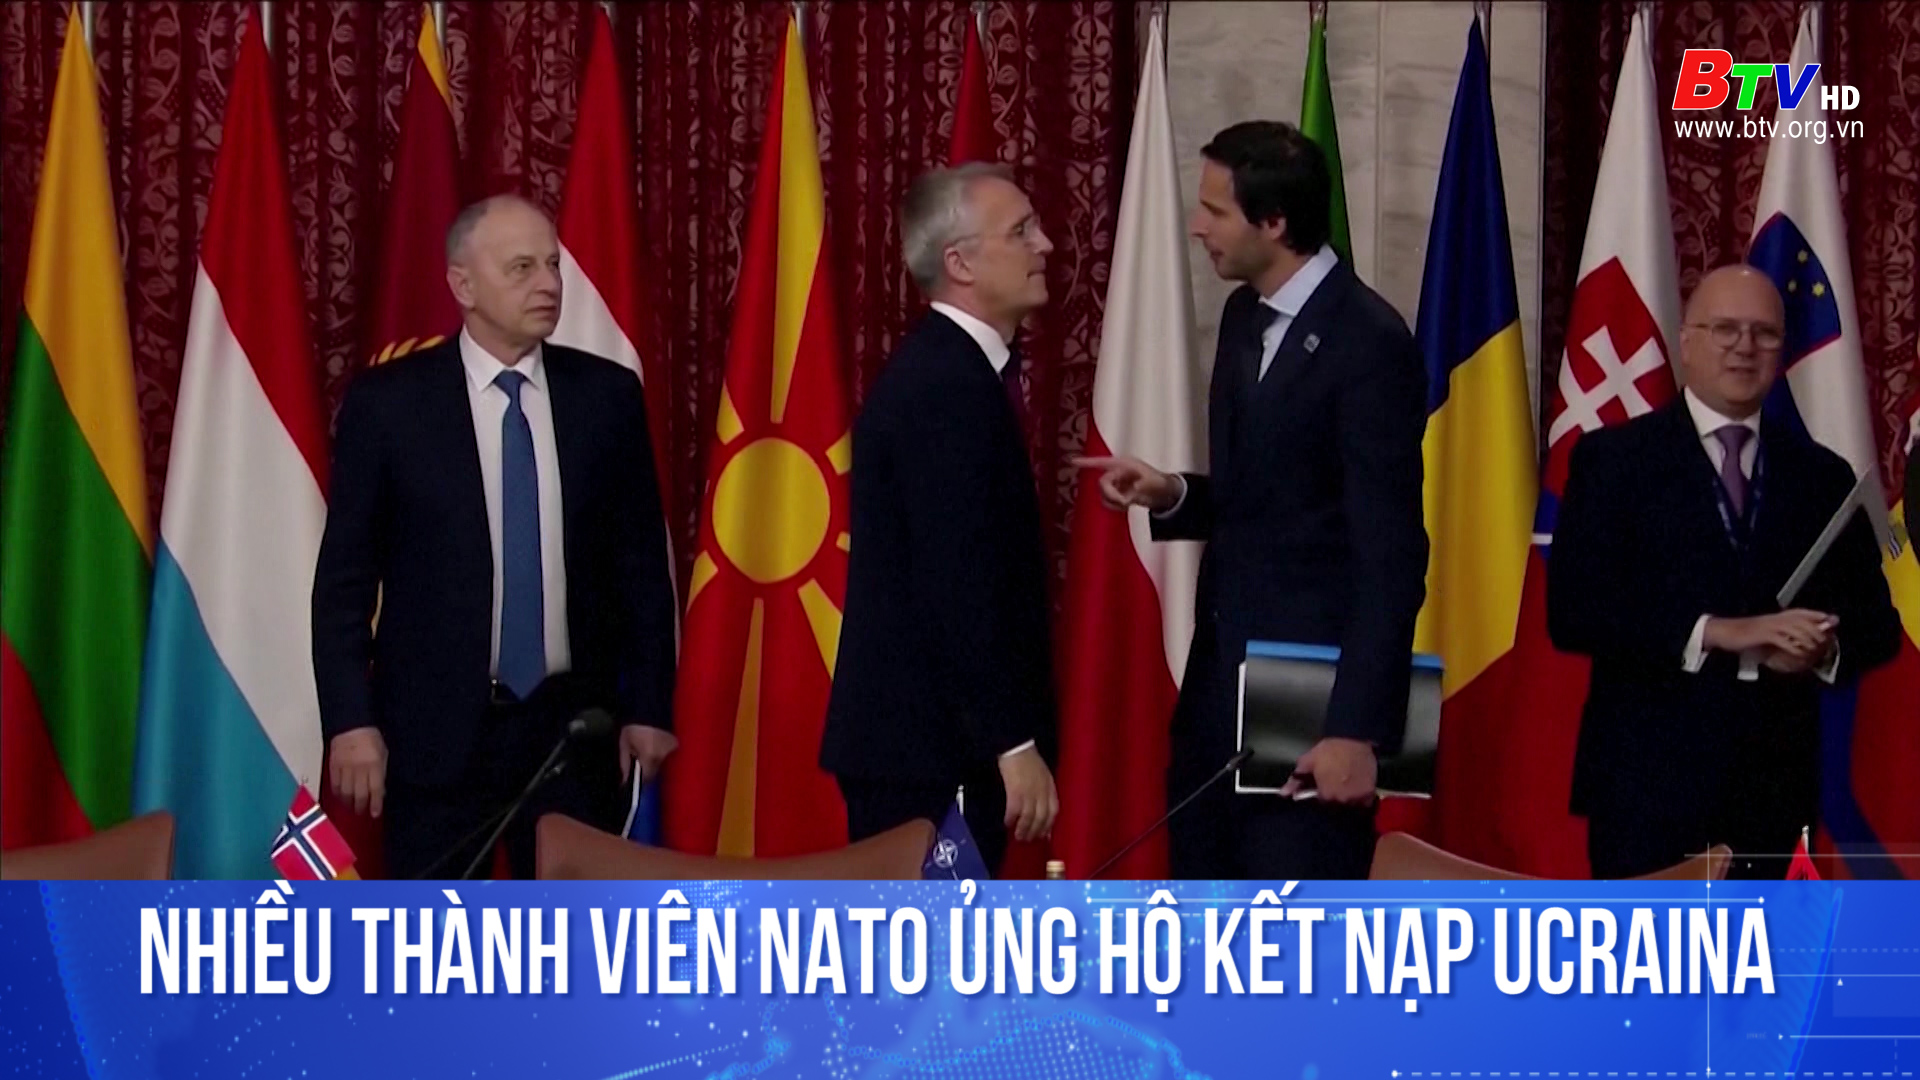 Nhiều thành viên NATO ủng hộ kết nạp Ucraina